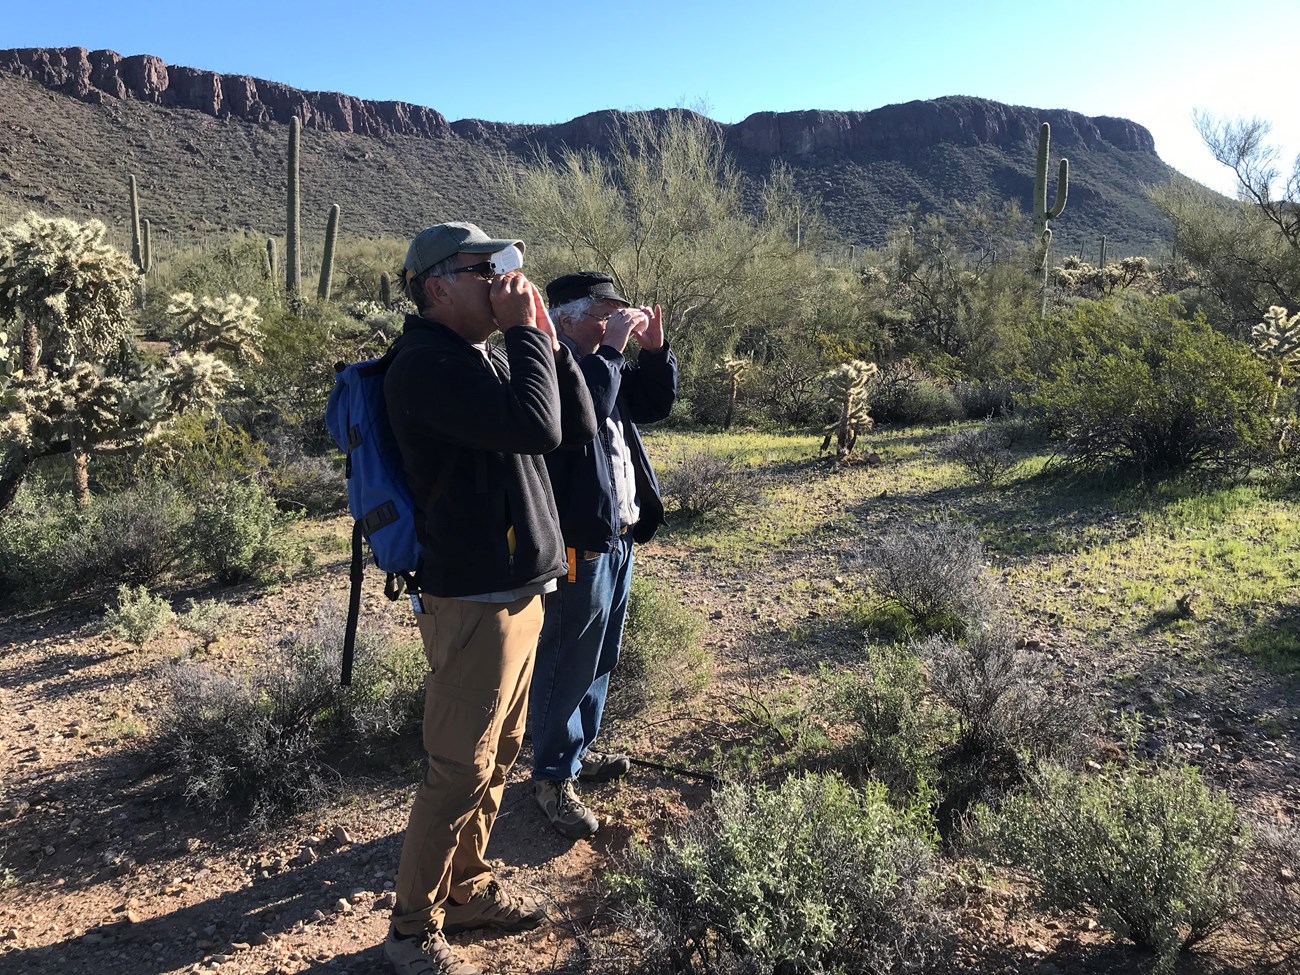 Volunteers measure saguaro using clinometer